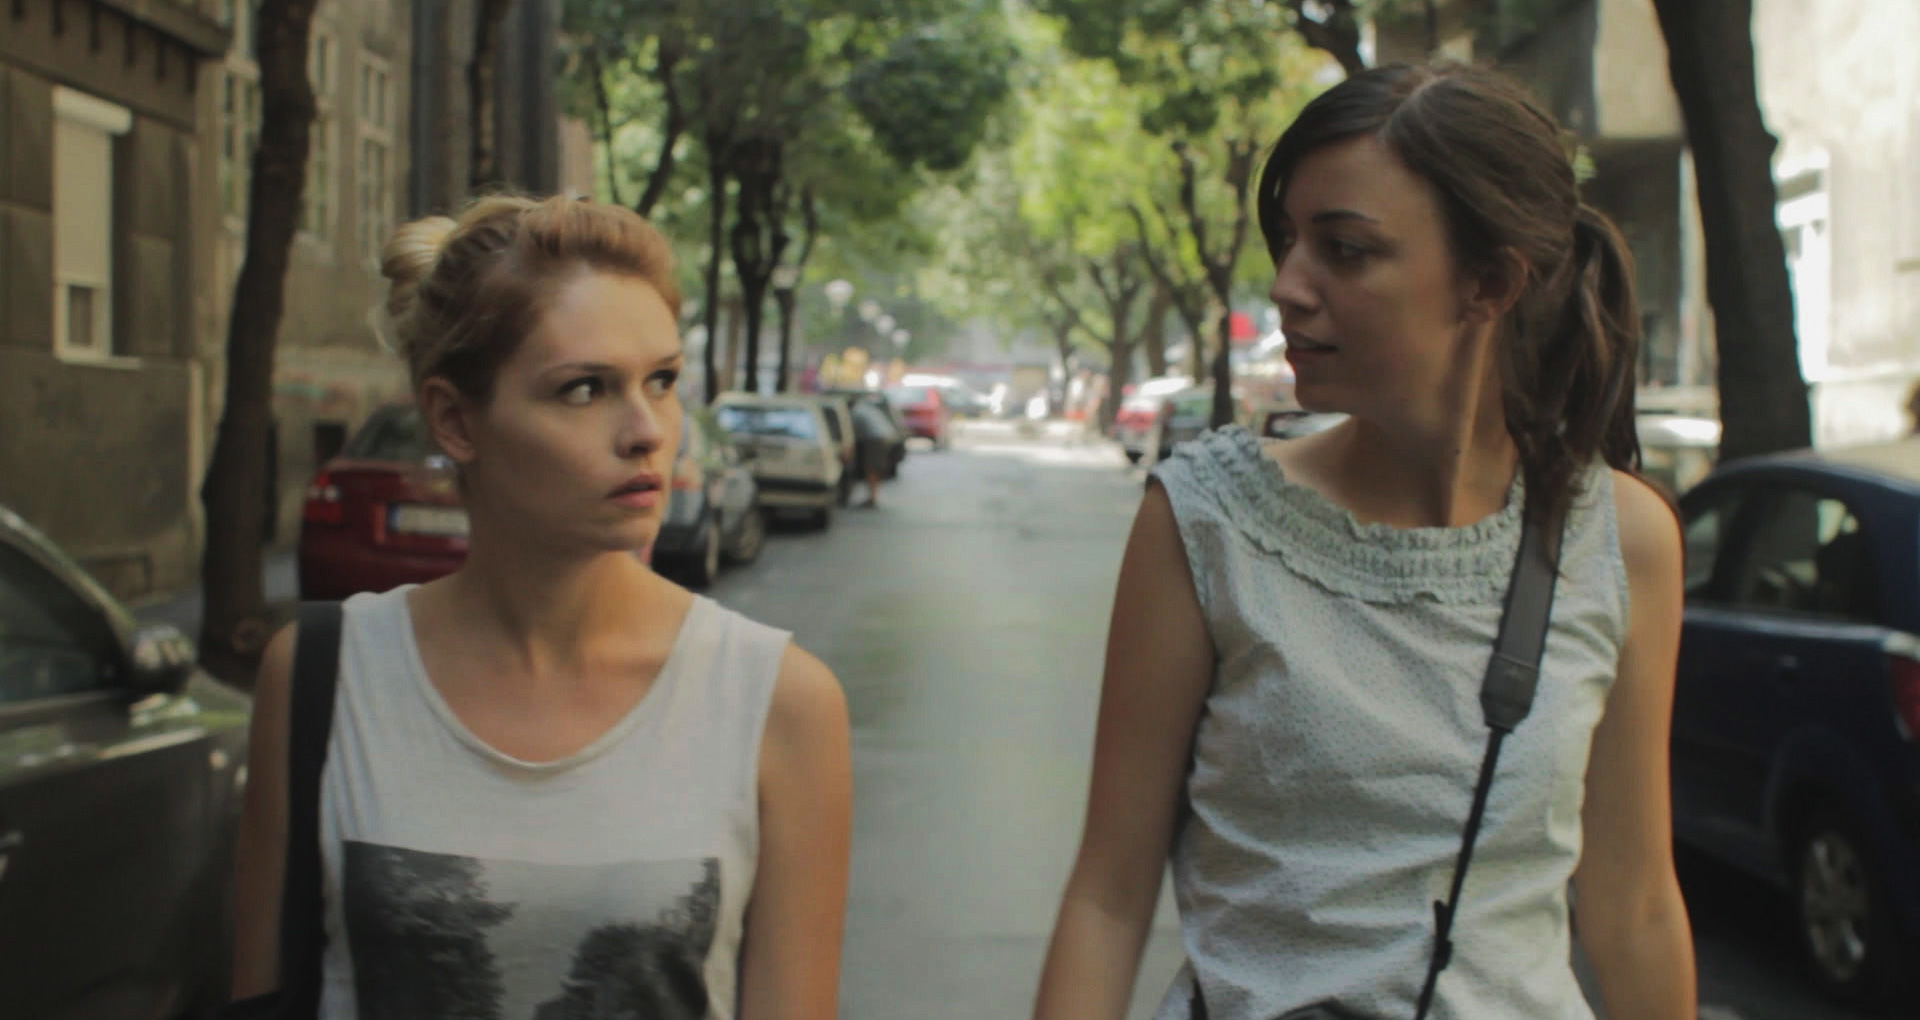 anna and maja meet randomly on the streets of belgrade